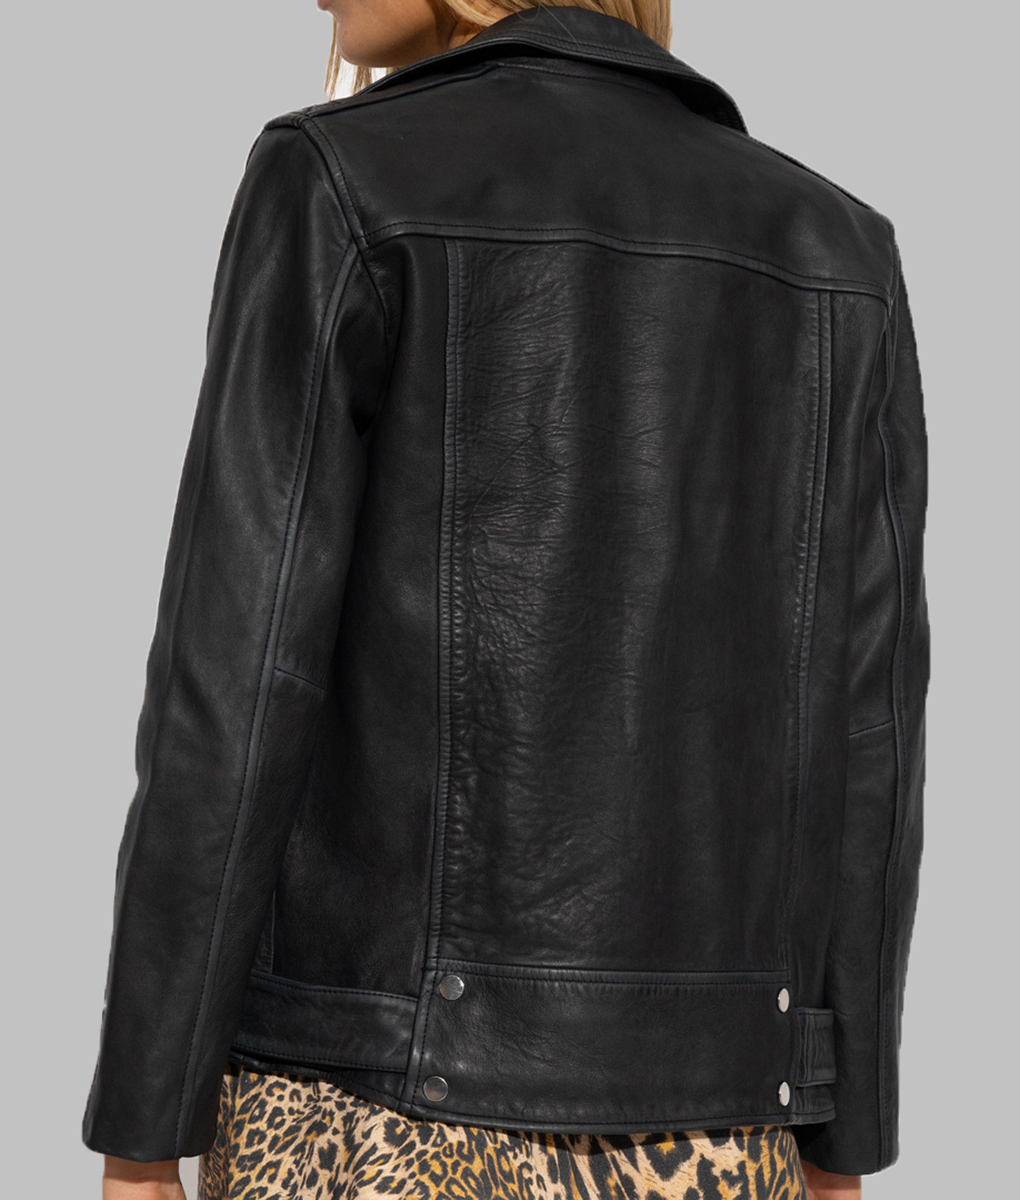 Lydia West Big Mood Black Leather Jacket (1)